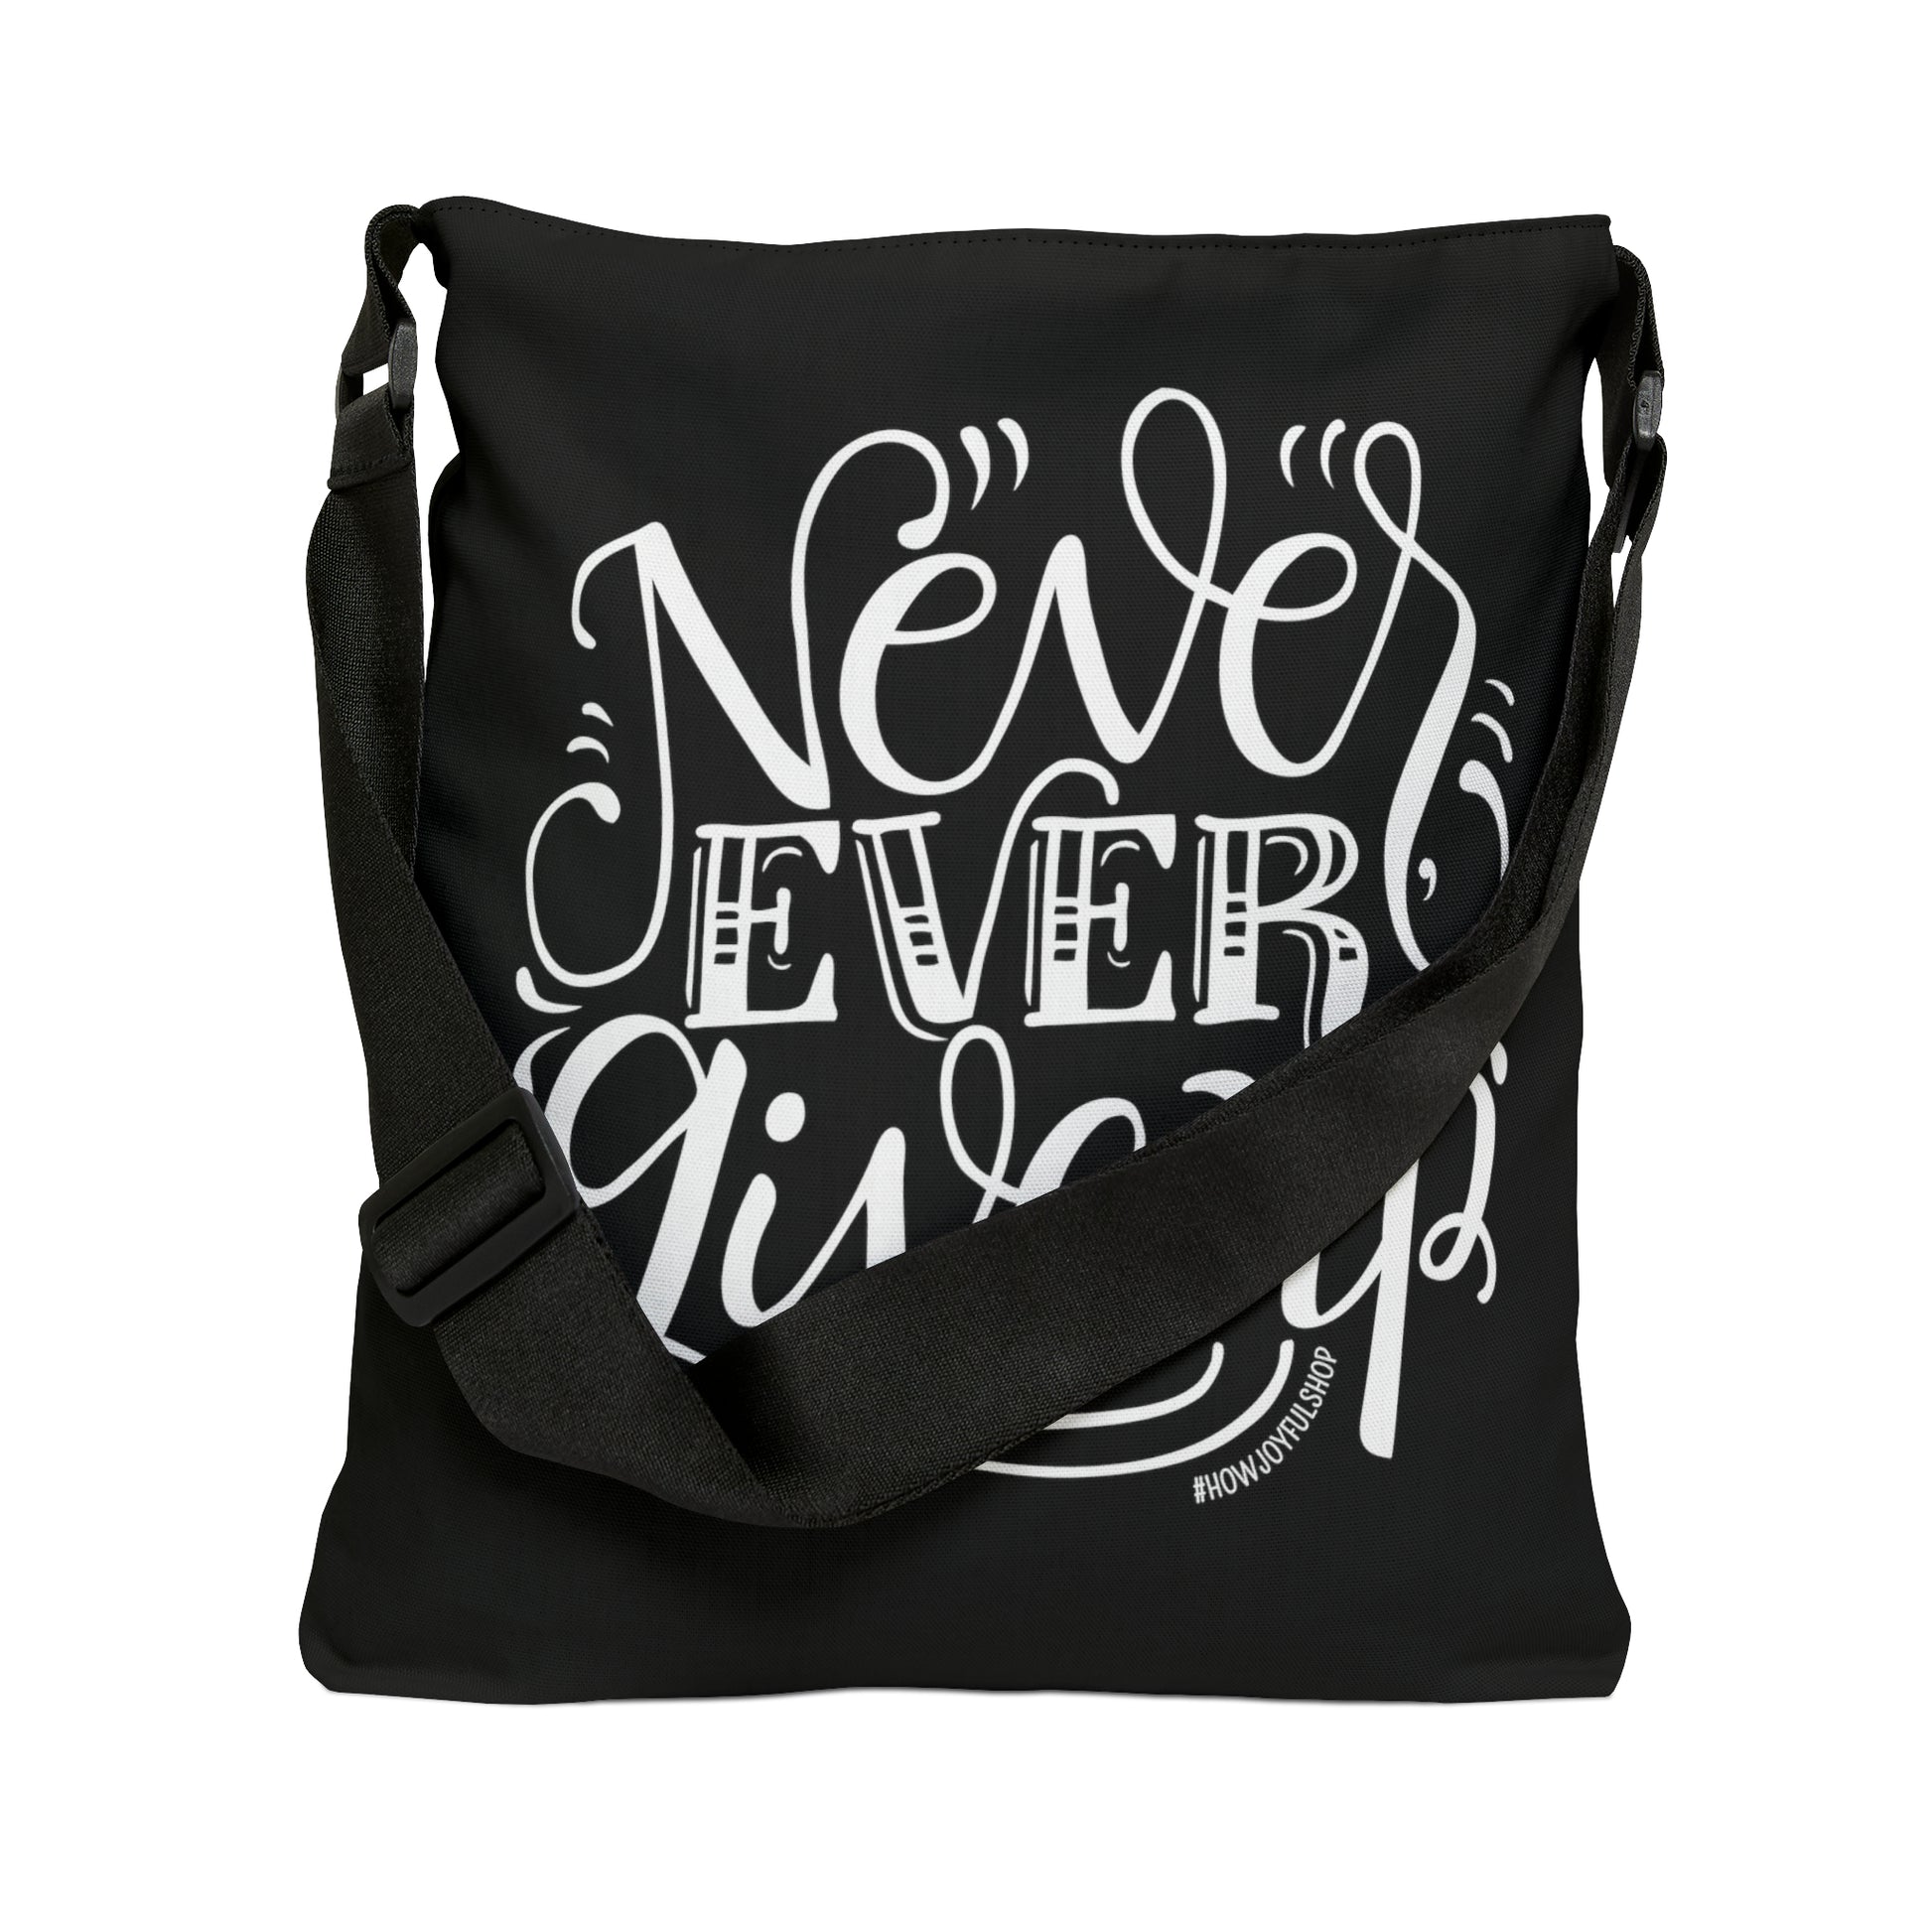 Never ever give up - Adjustable Tote Bag - howjoyfulshop